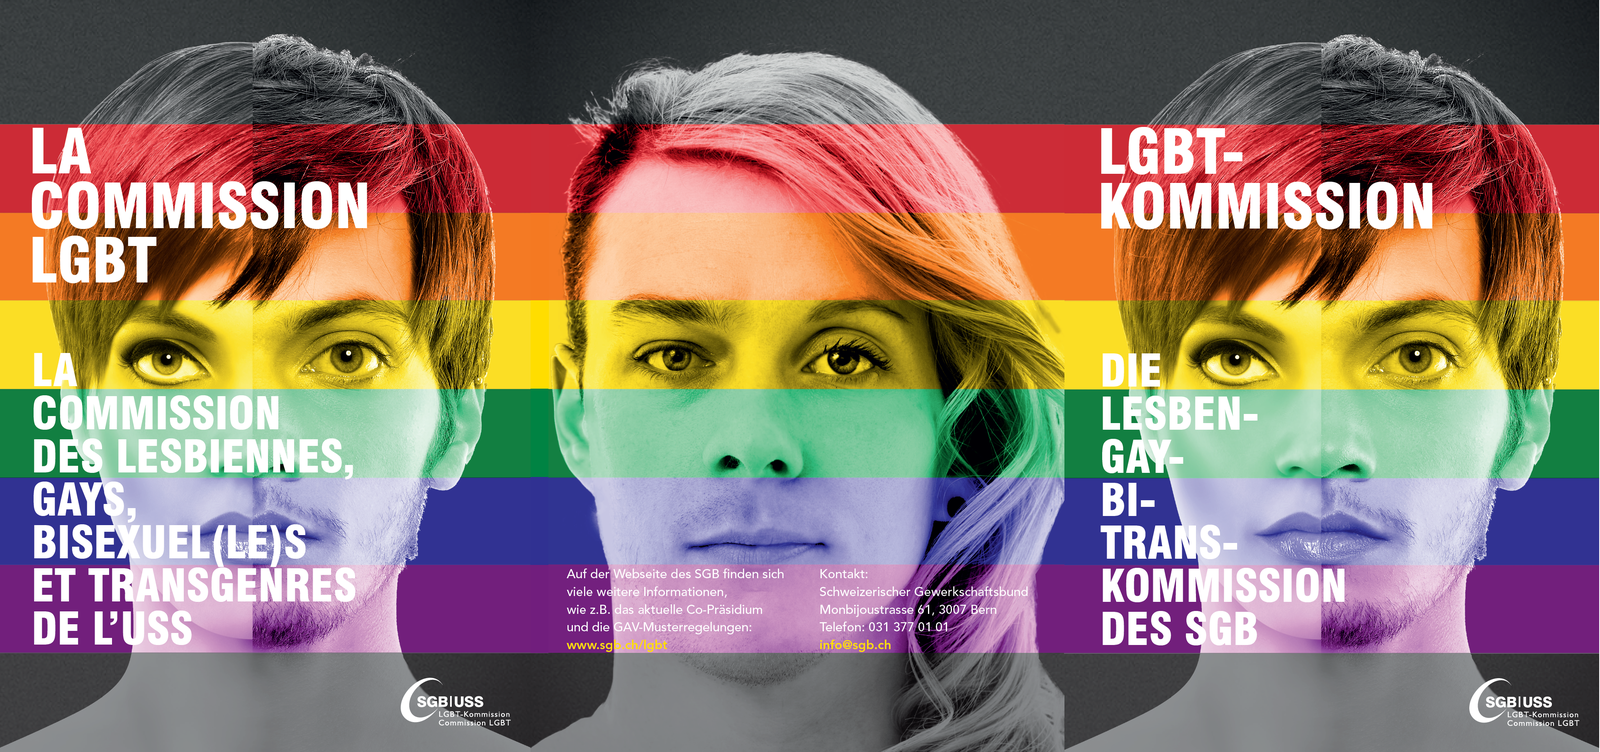 LGBT-Kommission